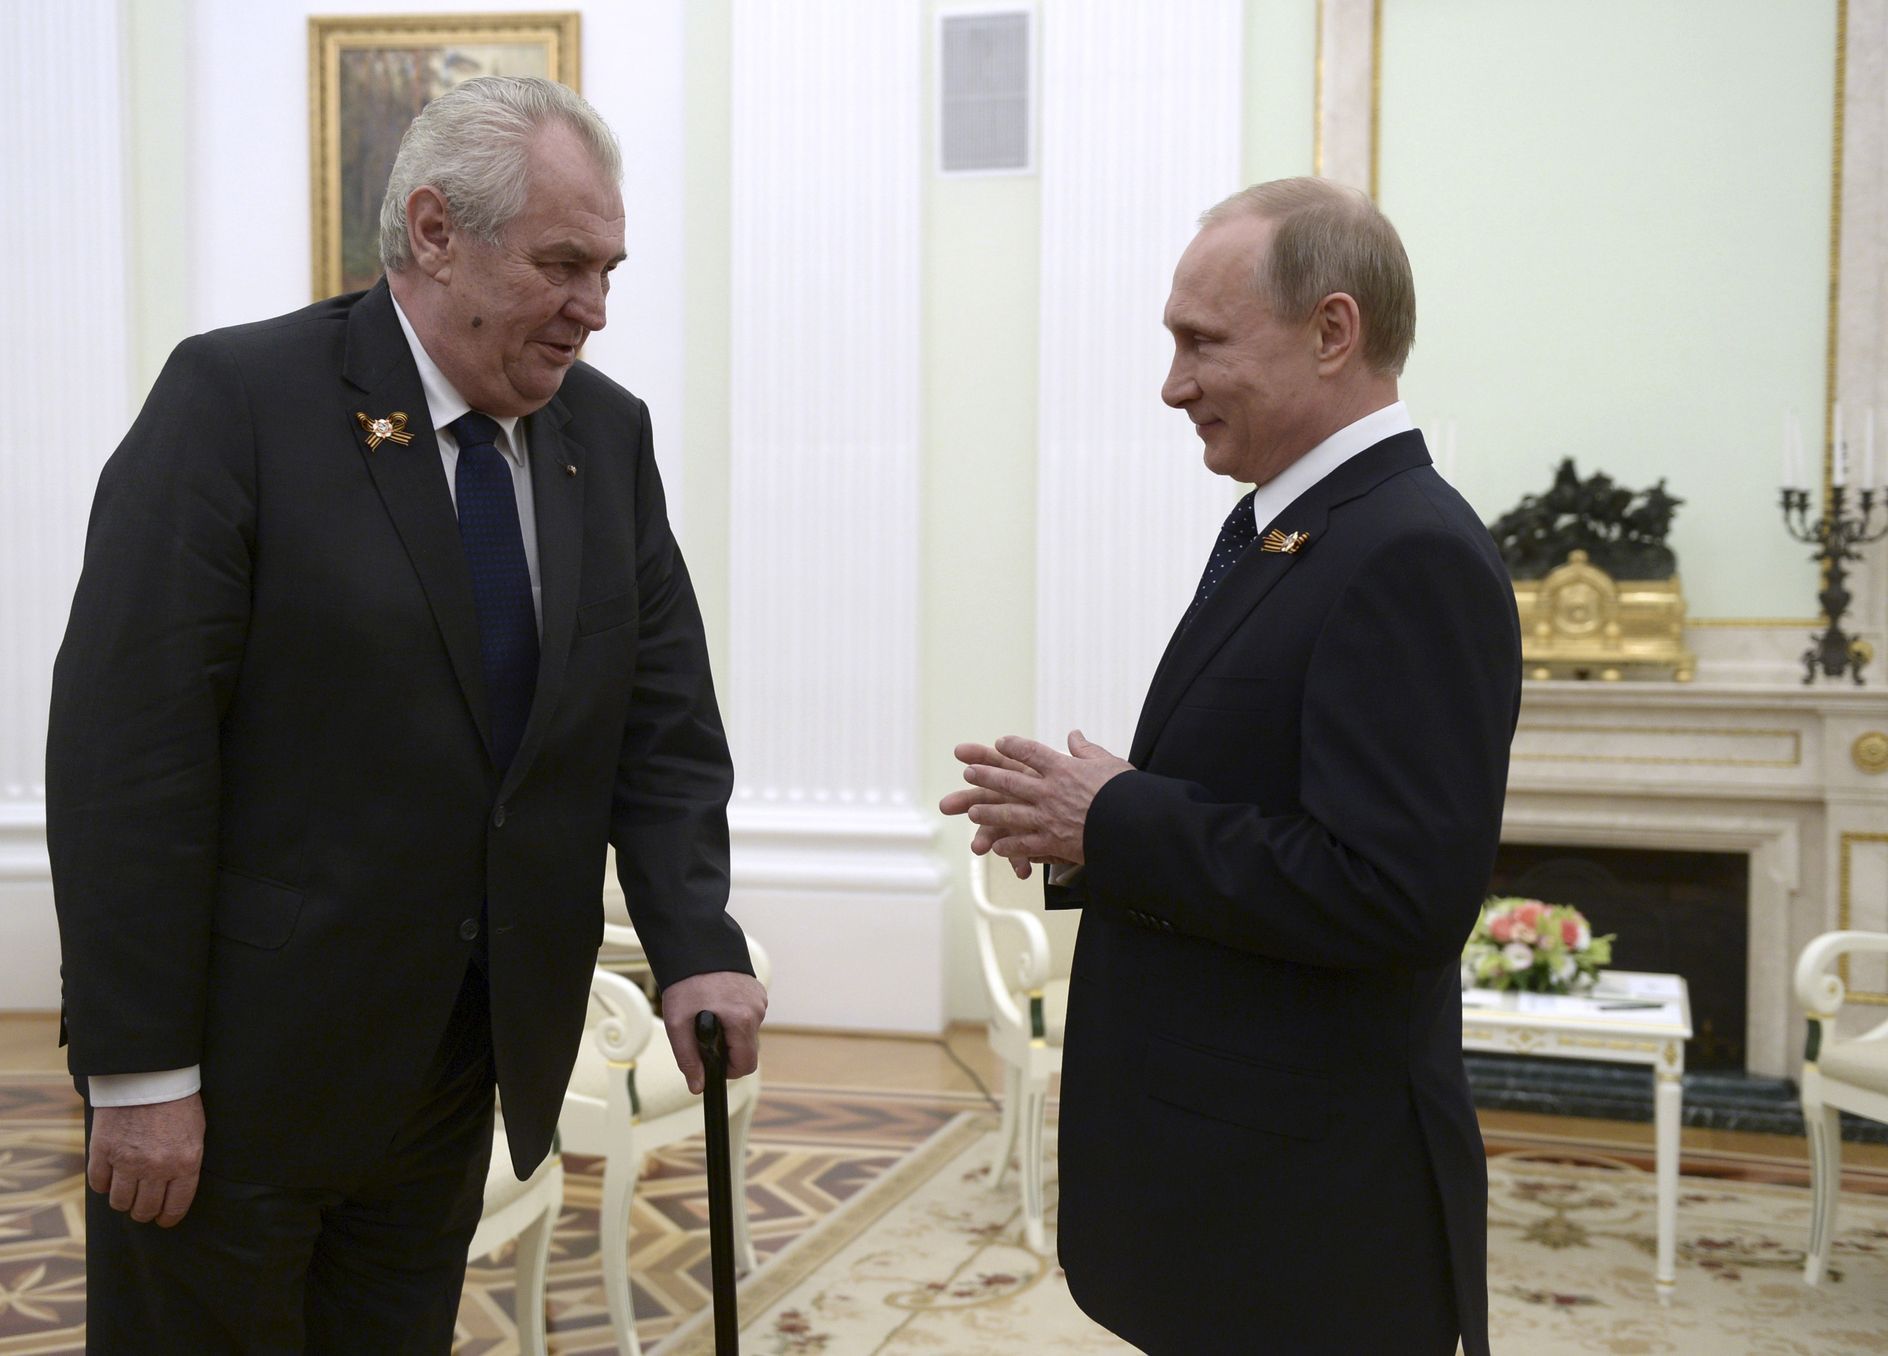 Fotogalerie k chystané grafice Zeman 2018 / Miloš Zeman s ruským prezidentem Vladimírem Putin při setkání v Moskvě. 9. 5. 2015.